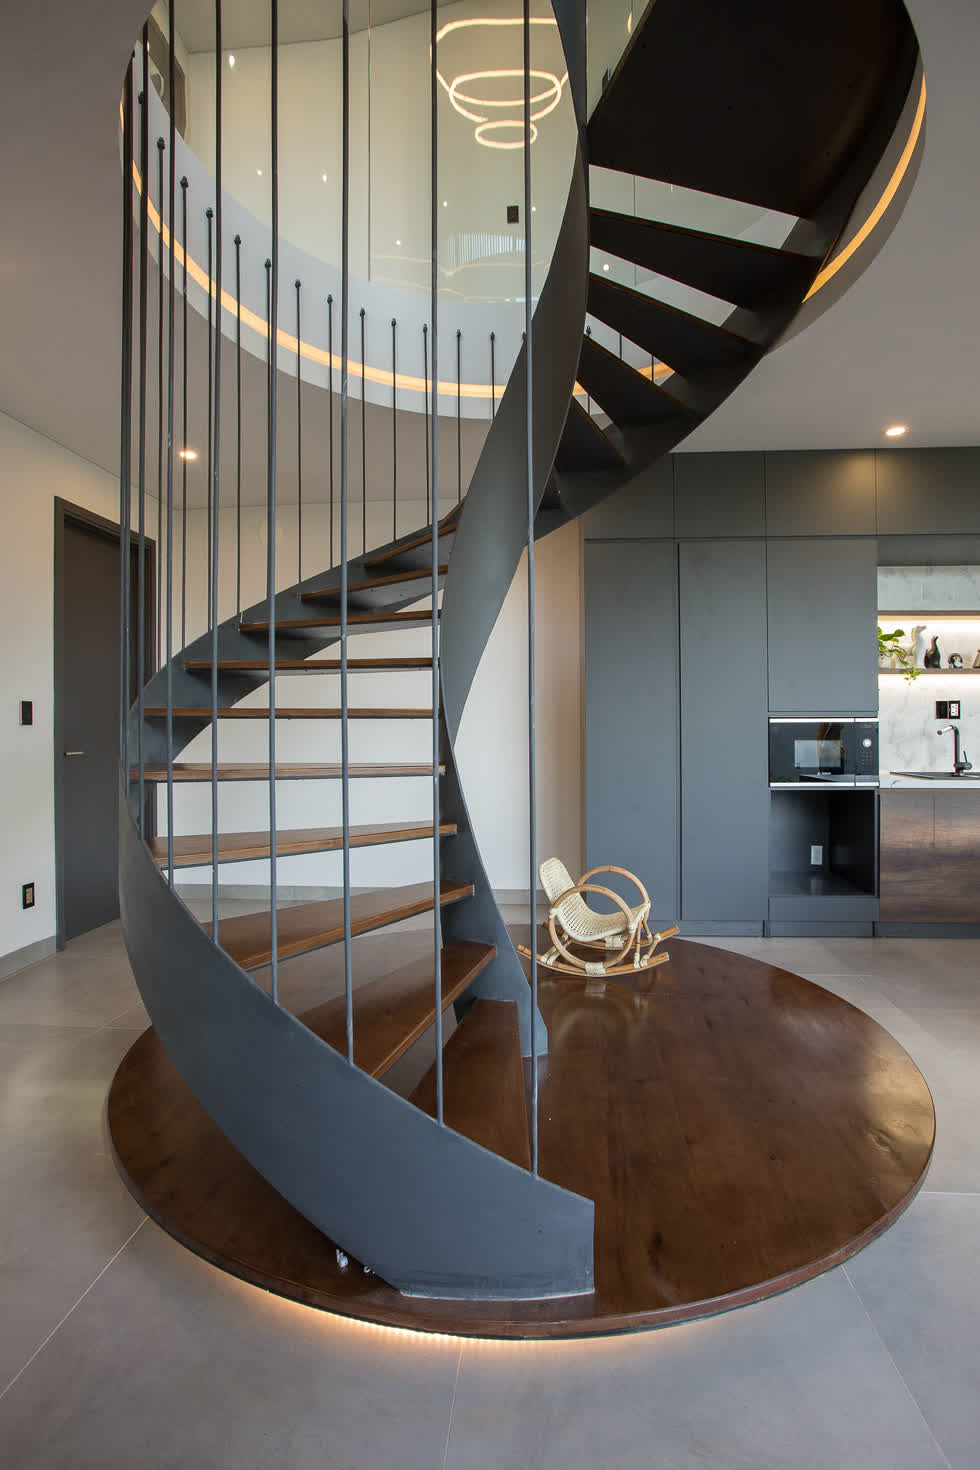 Cầu thang xoắn dẫn lối lên tầng 1 không chỉ đáp ứng về mặt công năng sử dụng mà còn mang tính thẩm mỹ, khiến không gian tầng trệt có điểm nhấn ấn tượng .